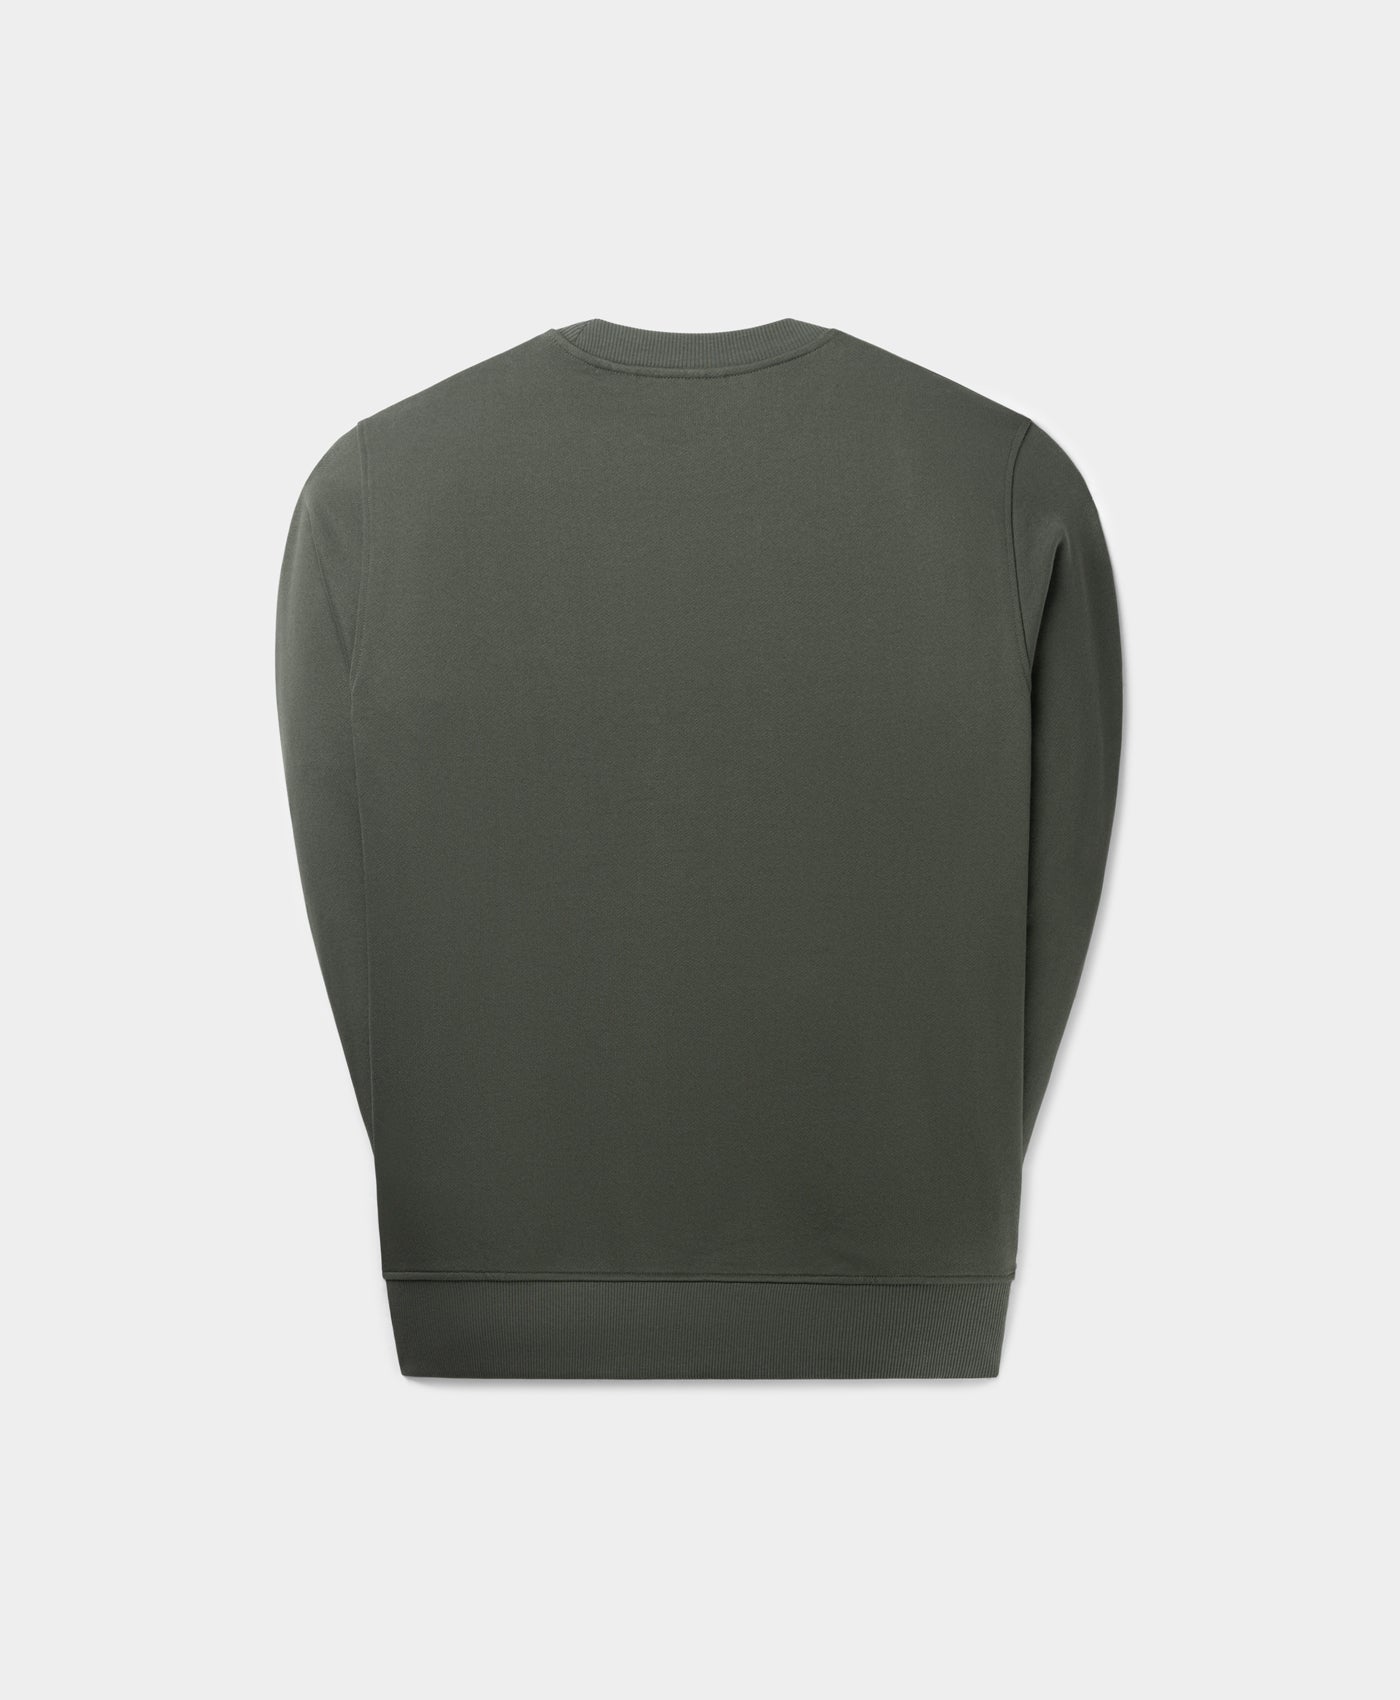 DP - Chimera Green Glow Sweater - Packshot - Rear